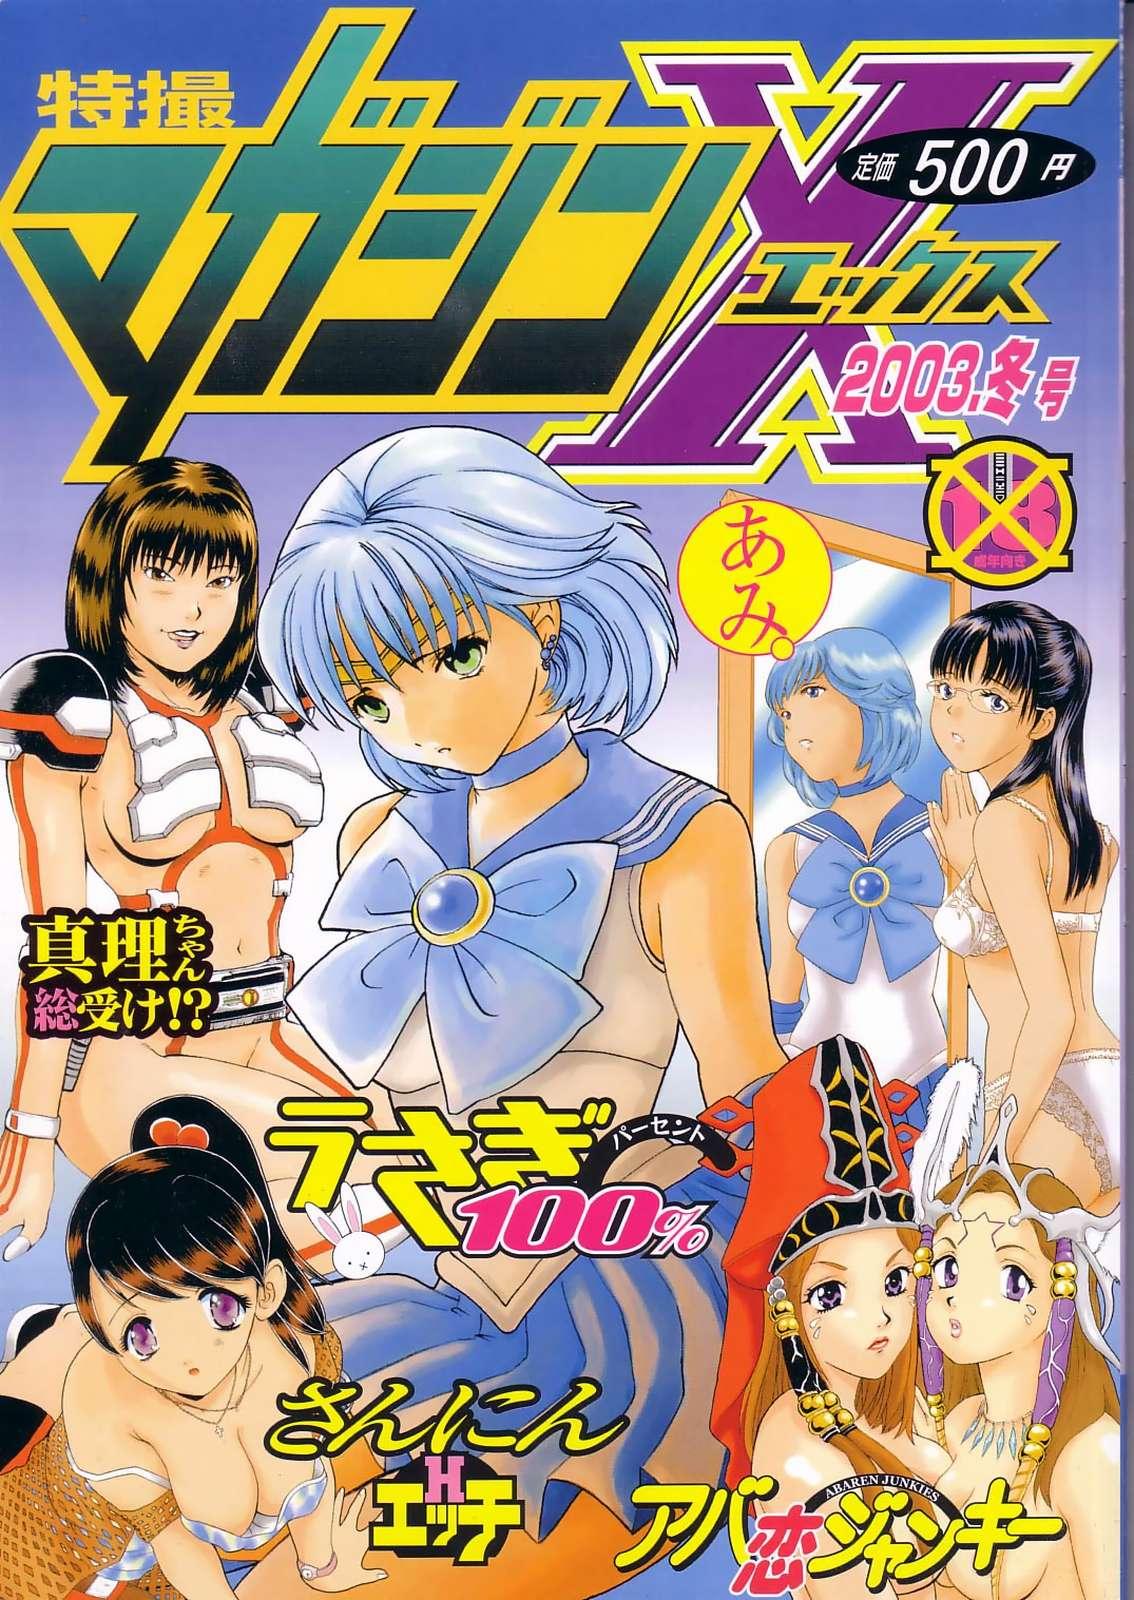 Gay 3some Tokusatsu Magazine x 2003 Fuyu Gou - Sailor moon Ichigo 100 Flash - Page 1